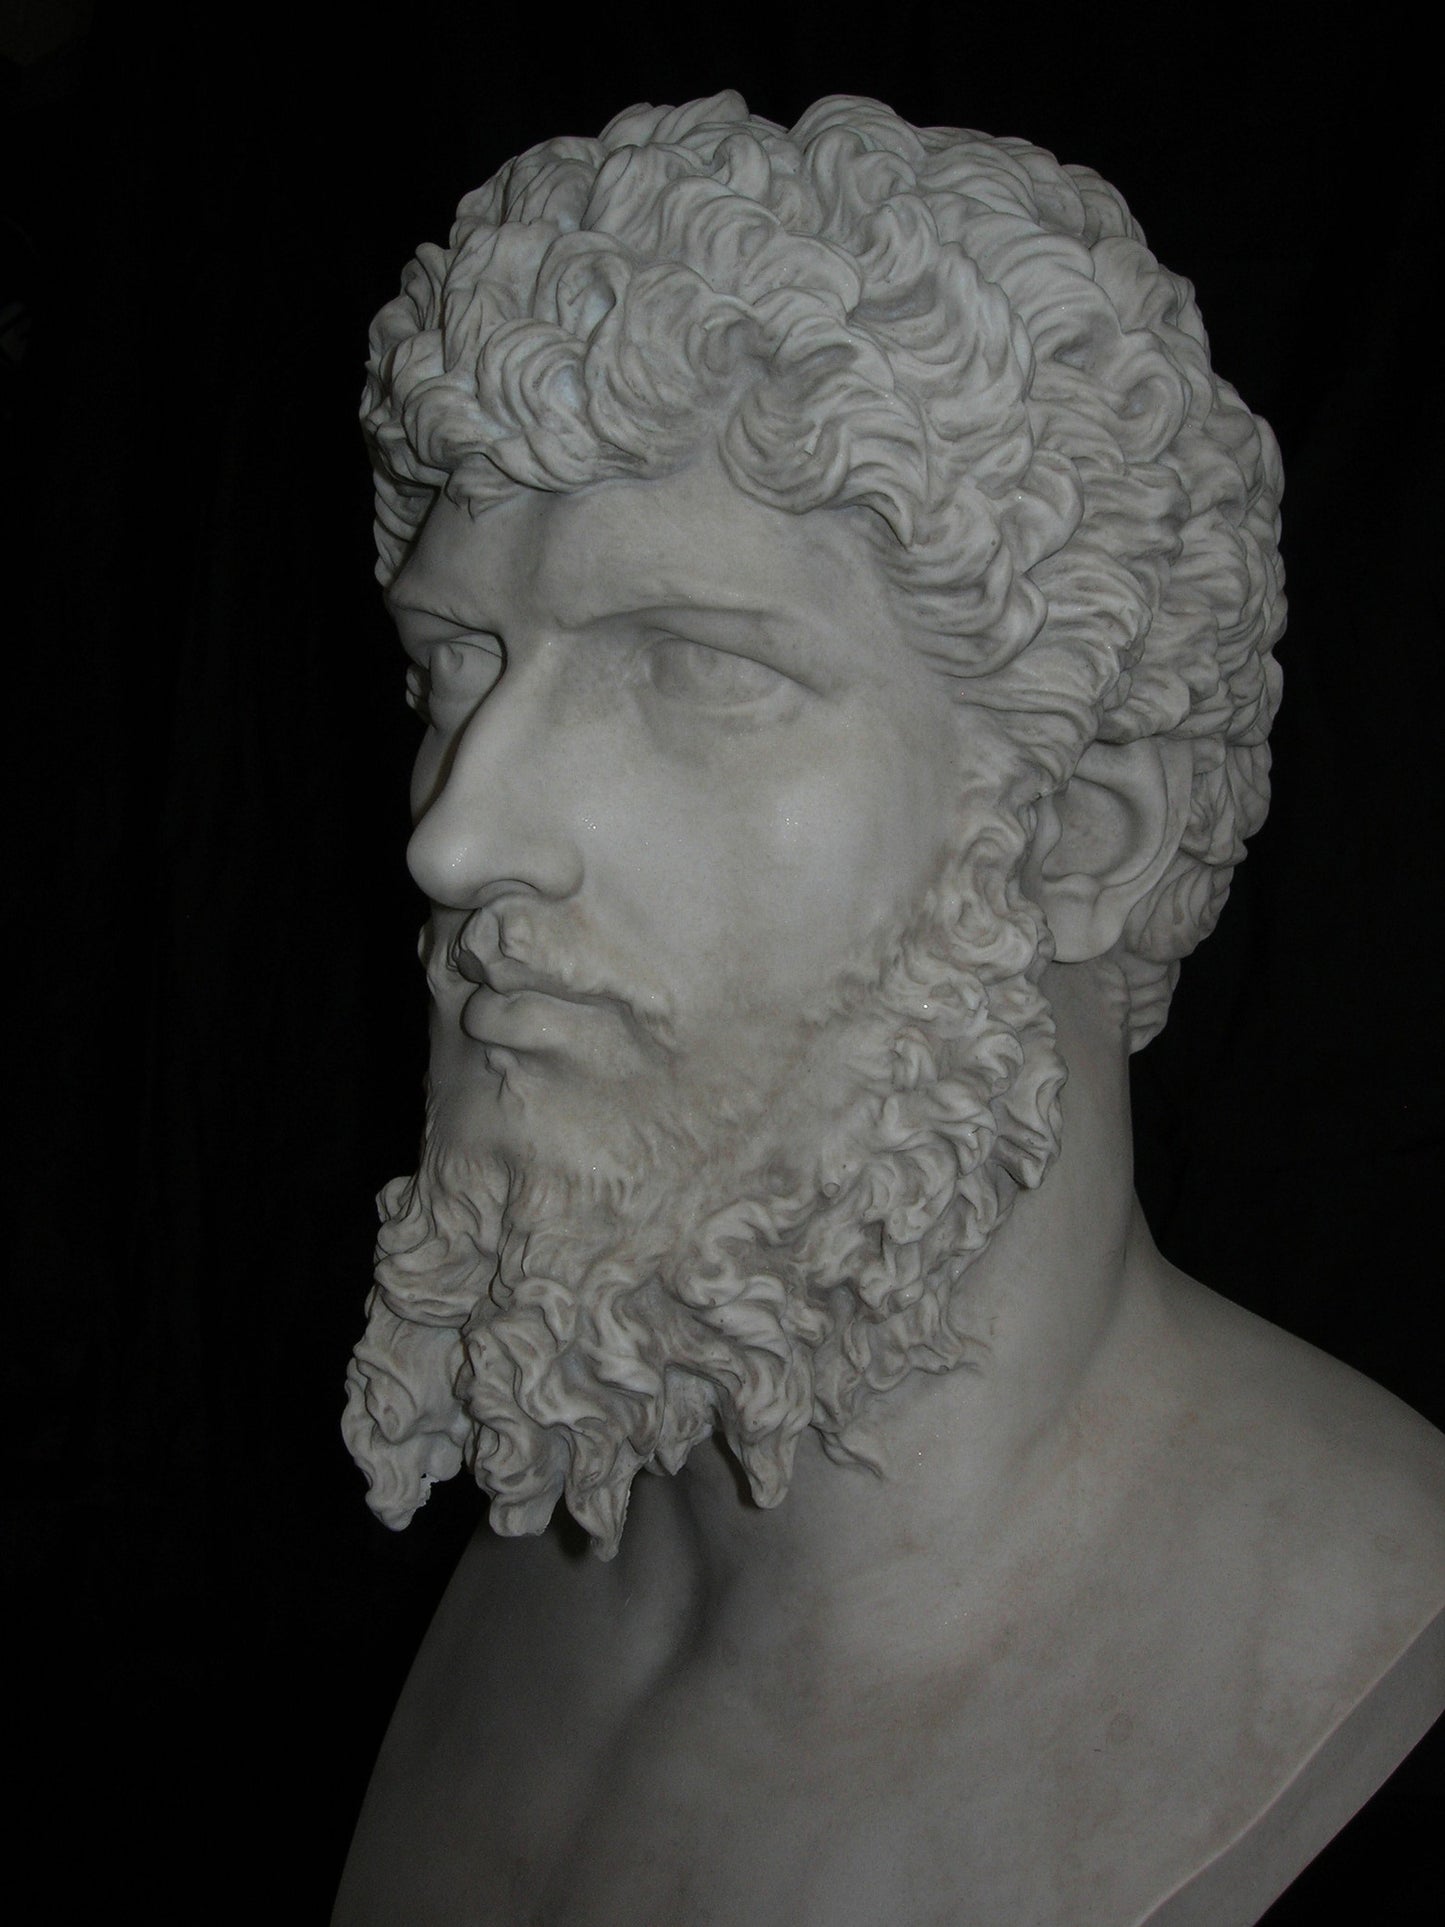 Lucius Verus Roman Emperor